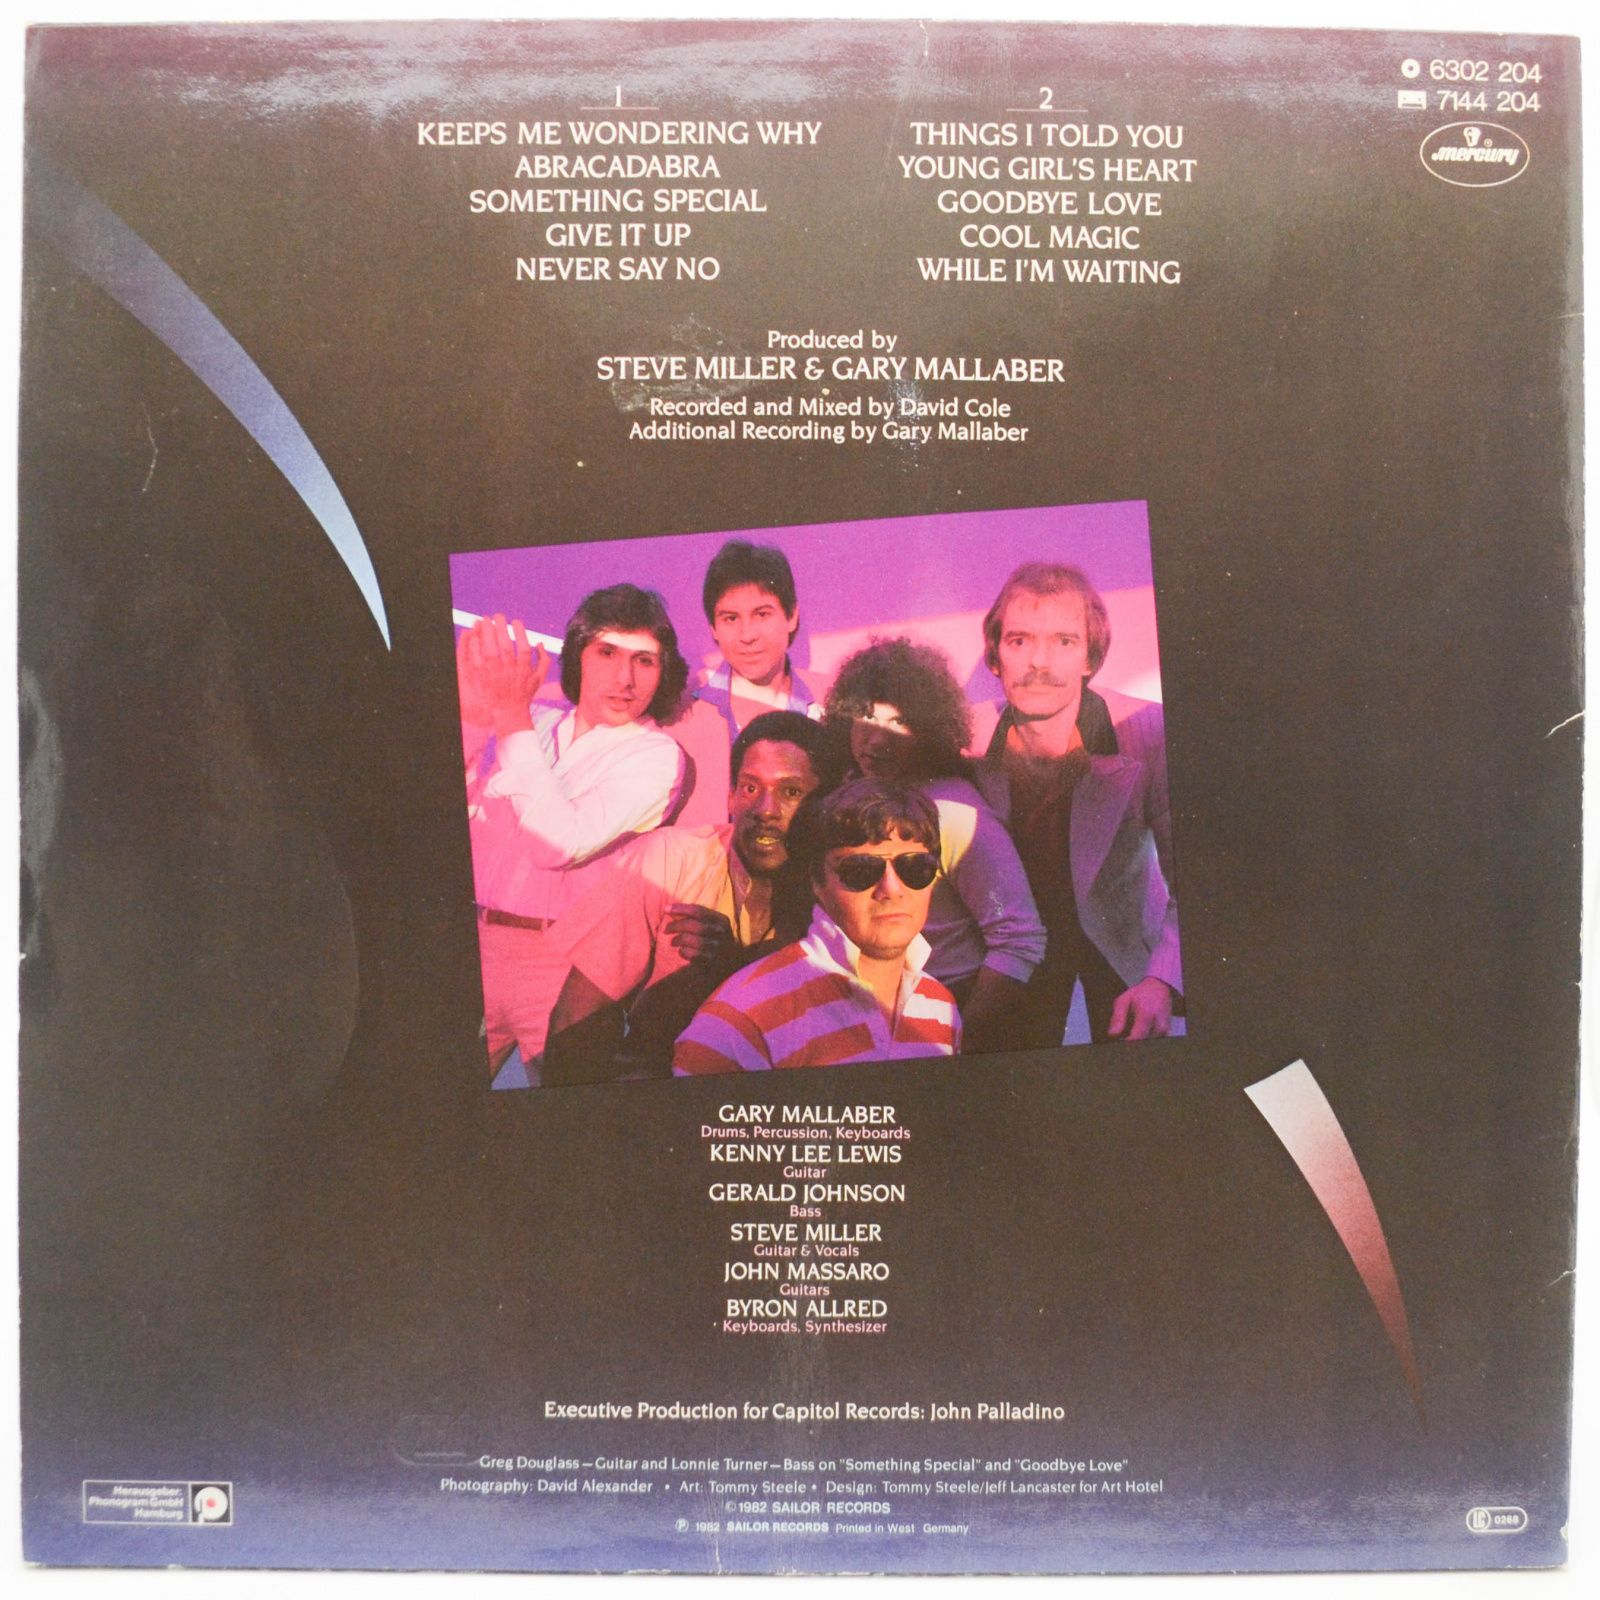 Steve Miller Band — Abracadabra, 1982